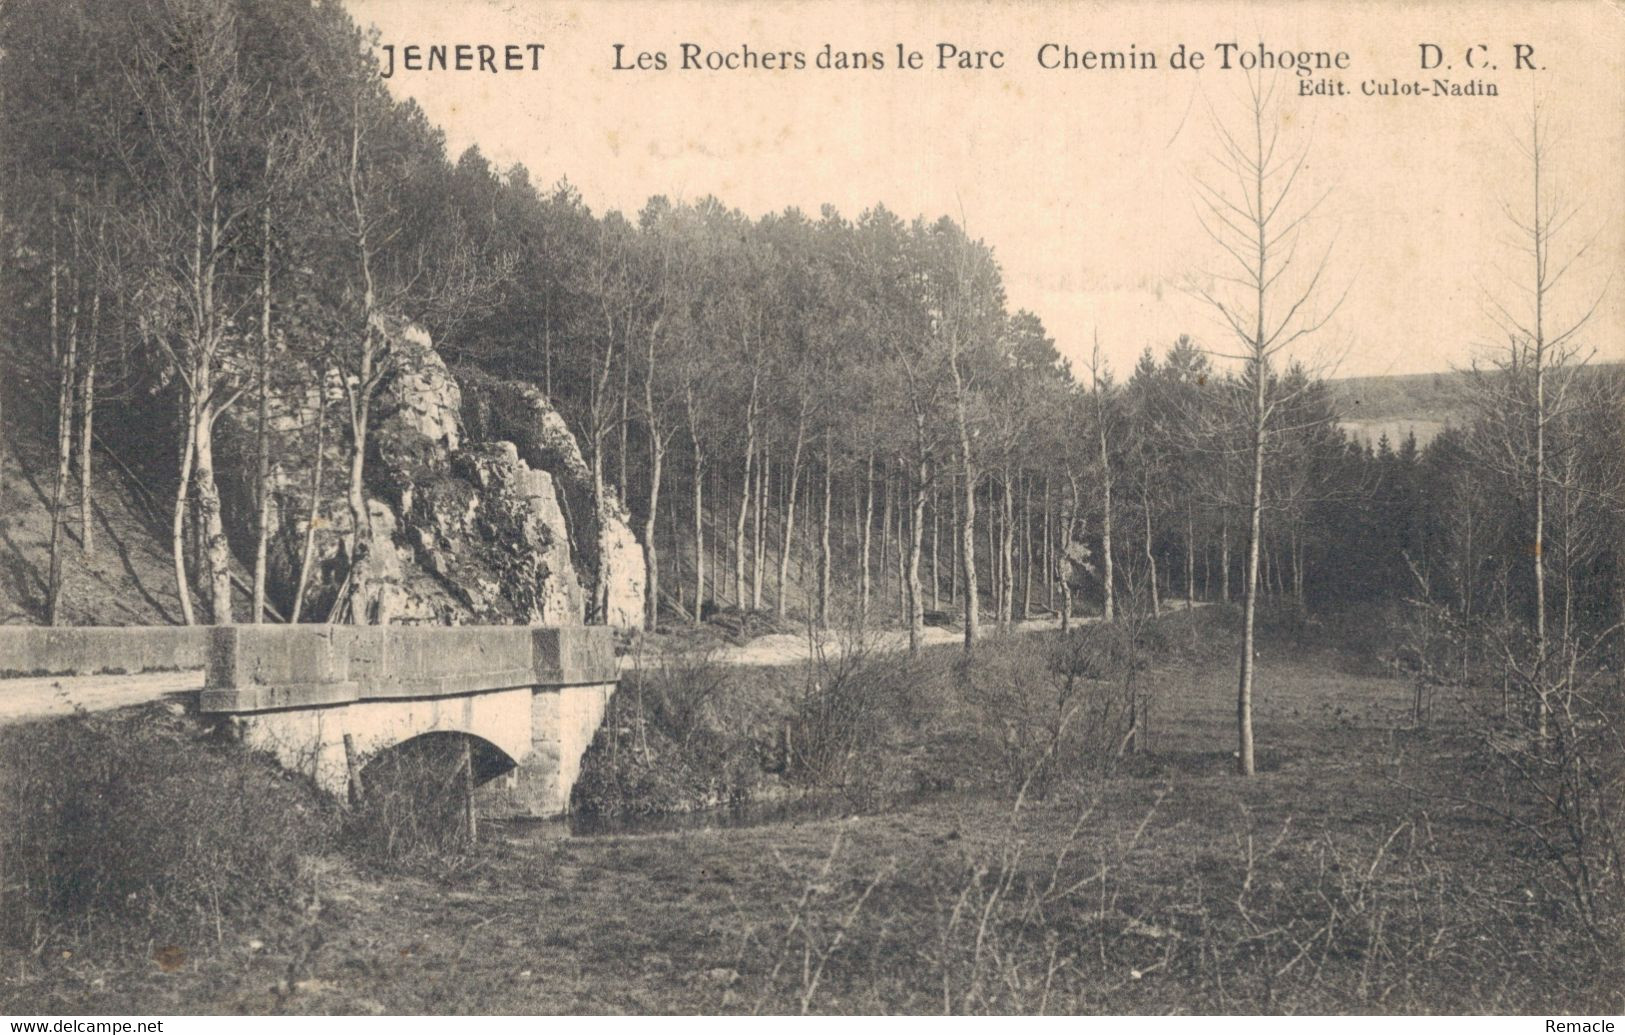 JENERET Les Rochers Dans Le Parc - Chemin De Tohogne DCR - Ouffet